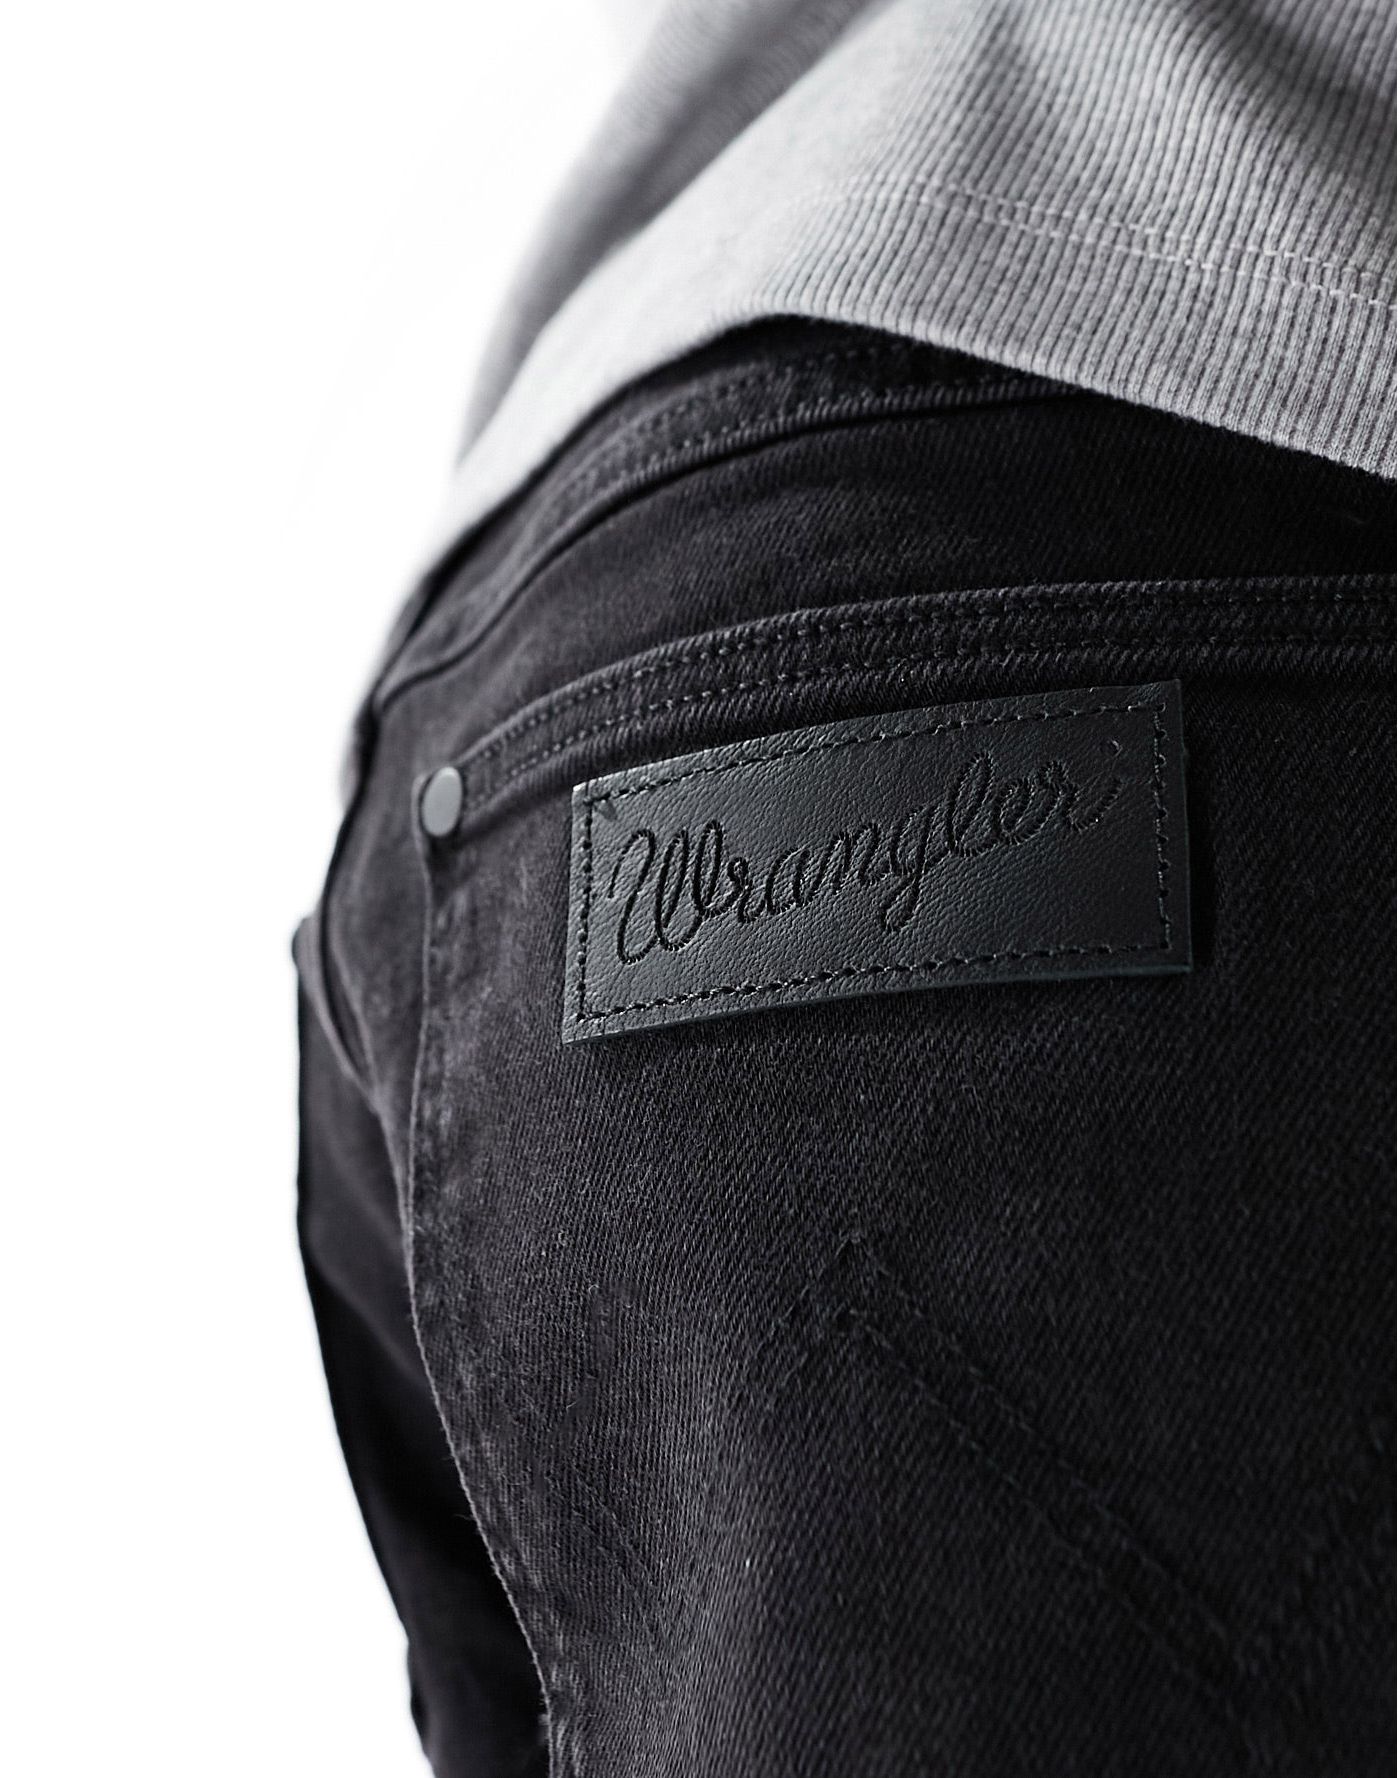 Wrangler Greensboro jeans in black